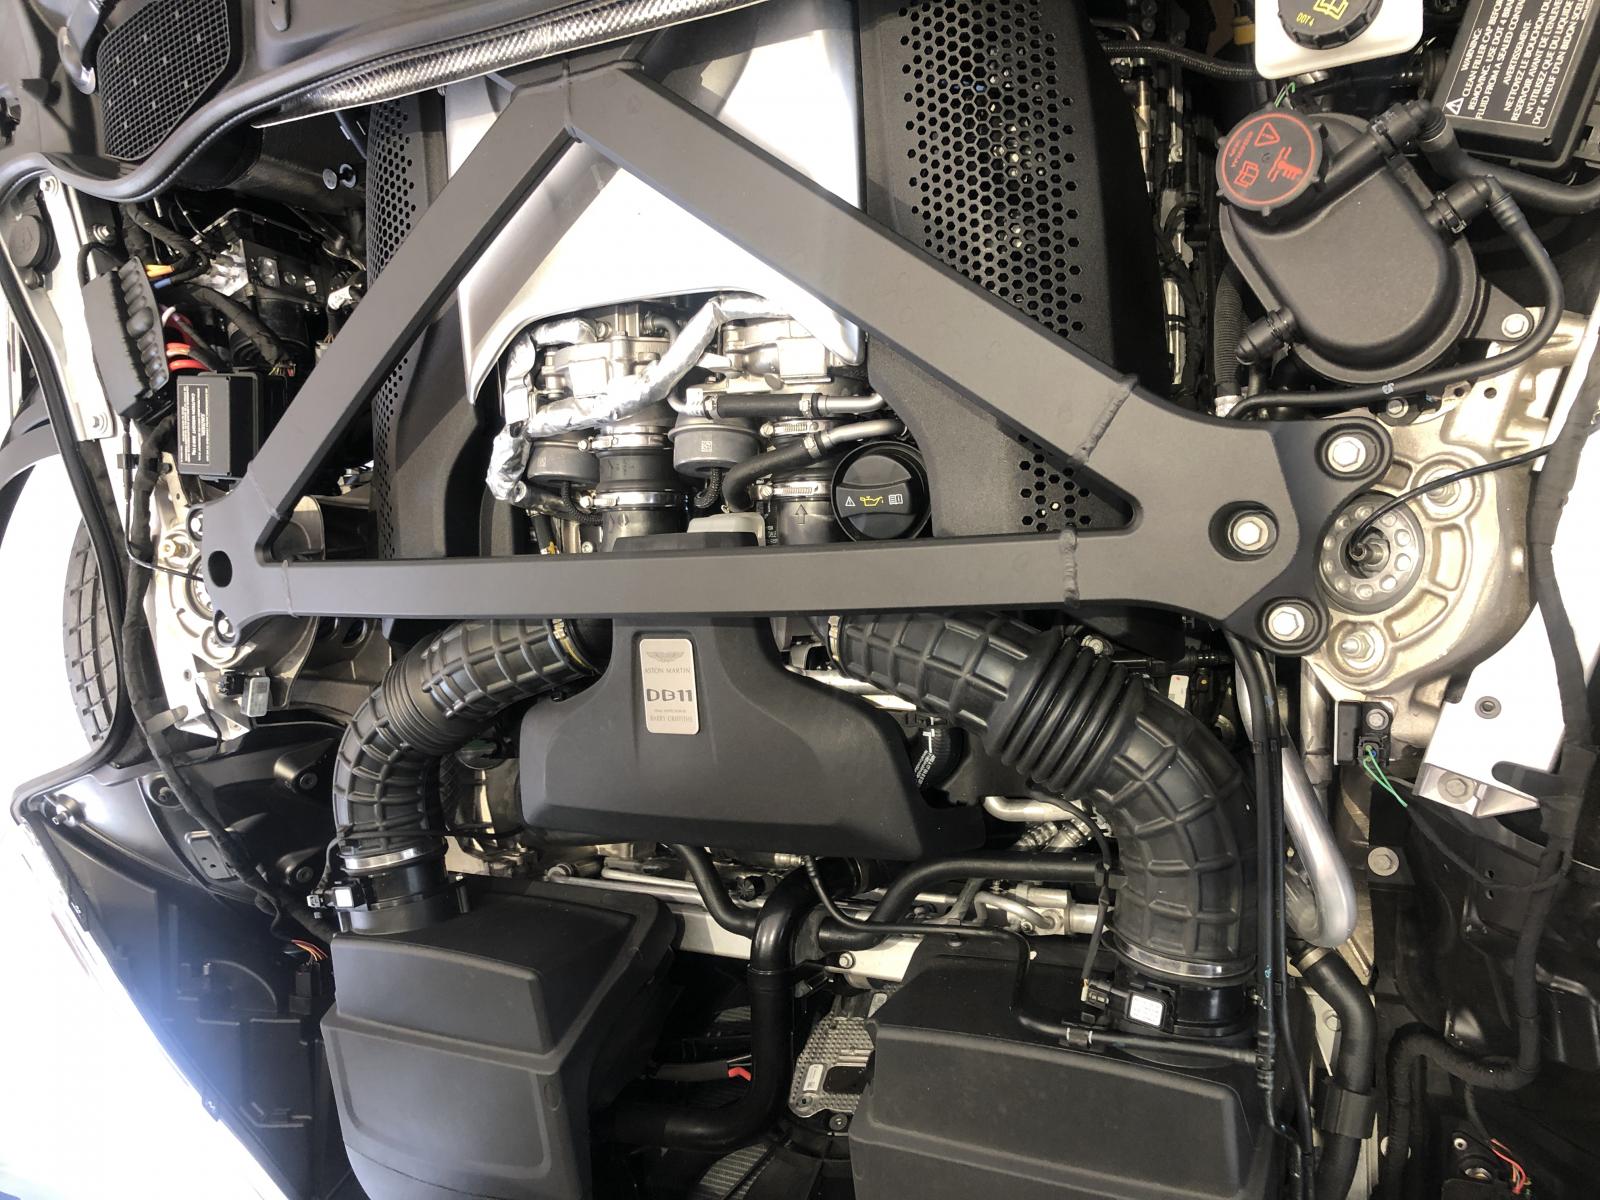 động cơ V8 trên siêu xe Aston Martin DB11 của doanh nhân Vũng Tàu do Mercedes-AMG sản xuấ